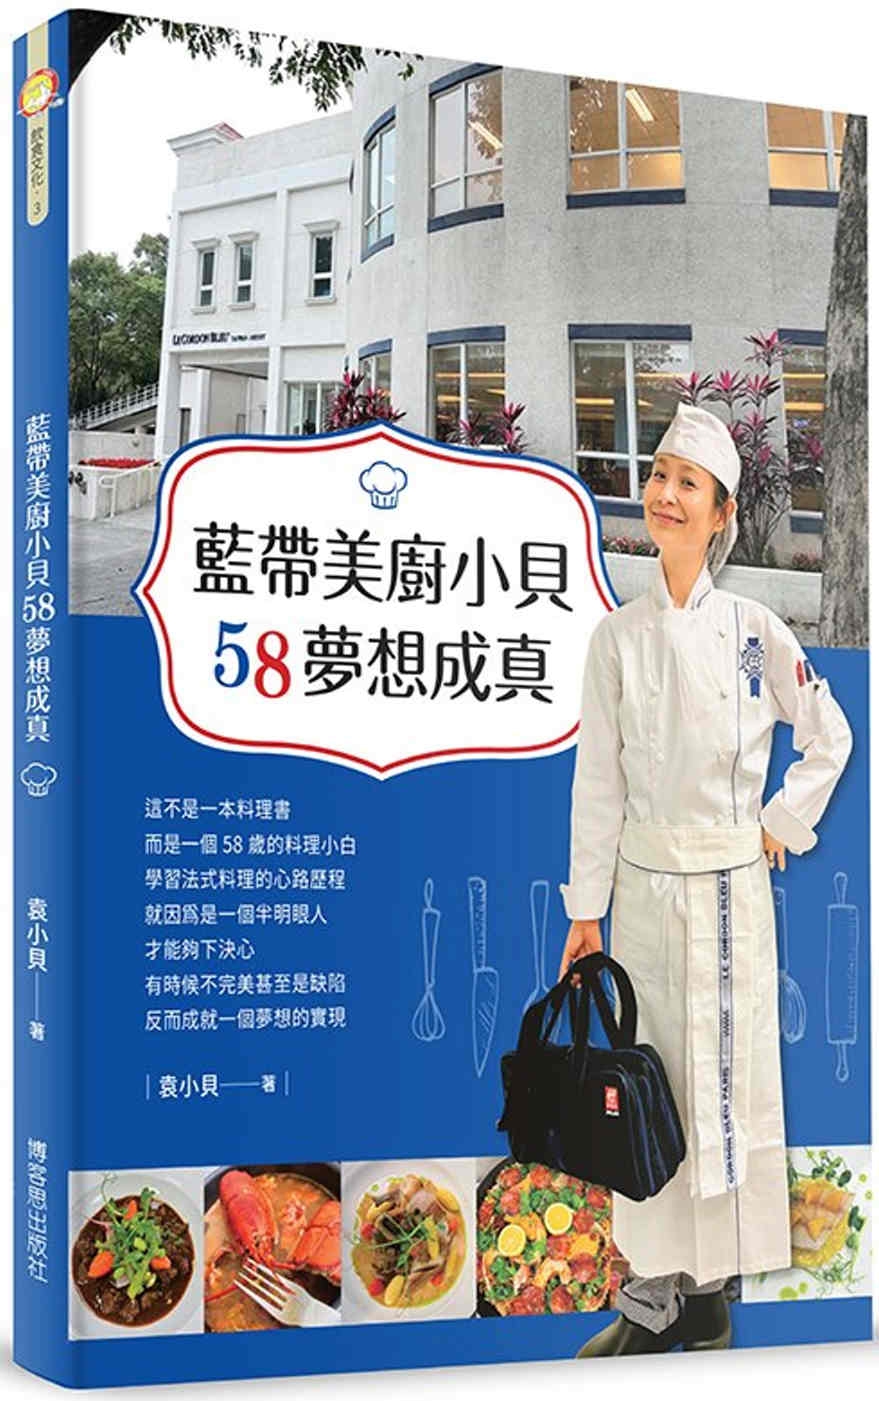 藍帶美廚小貝58夢想成真-學習法式料理的樂趣！：學習法式料理的樂趣＆走回廚房找回健康